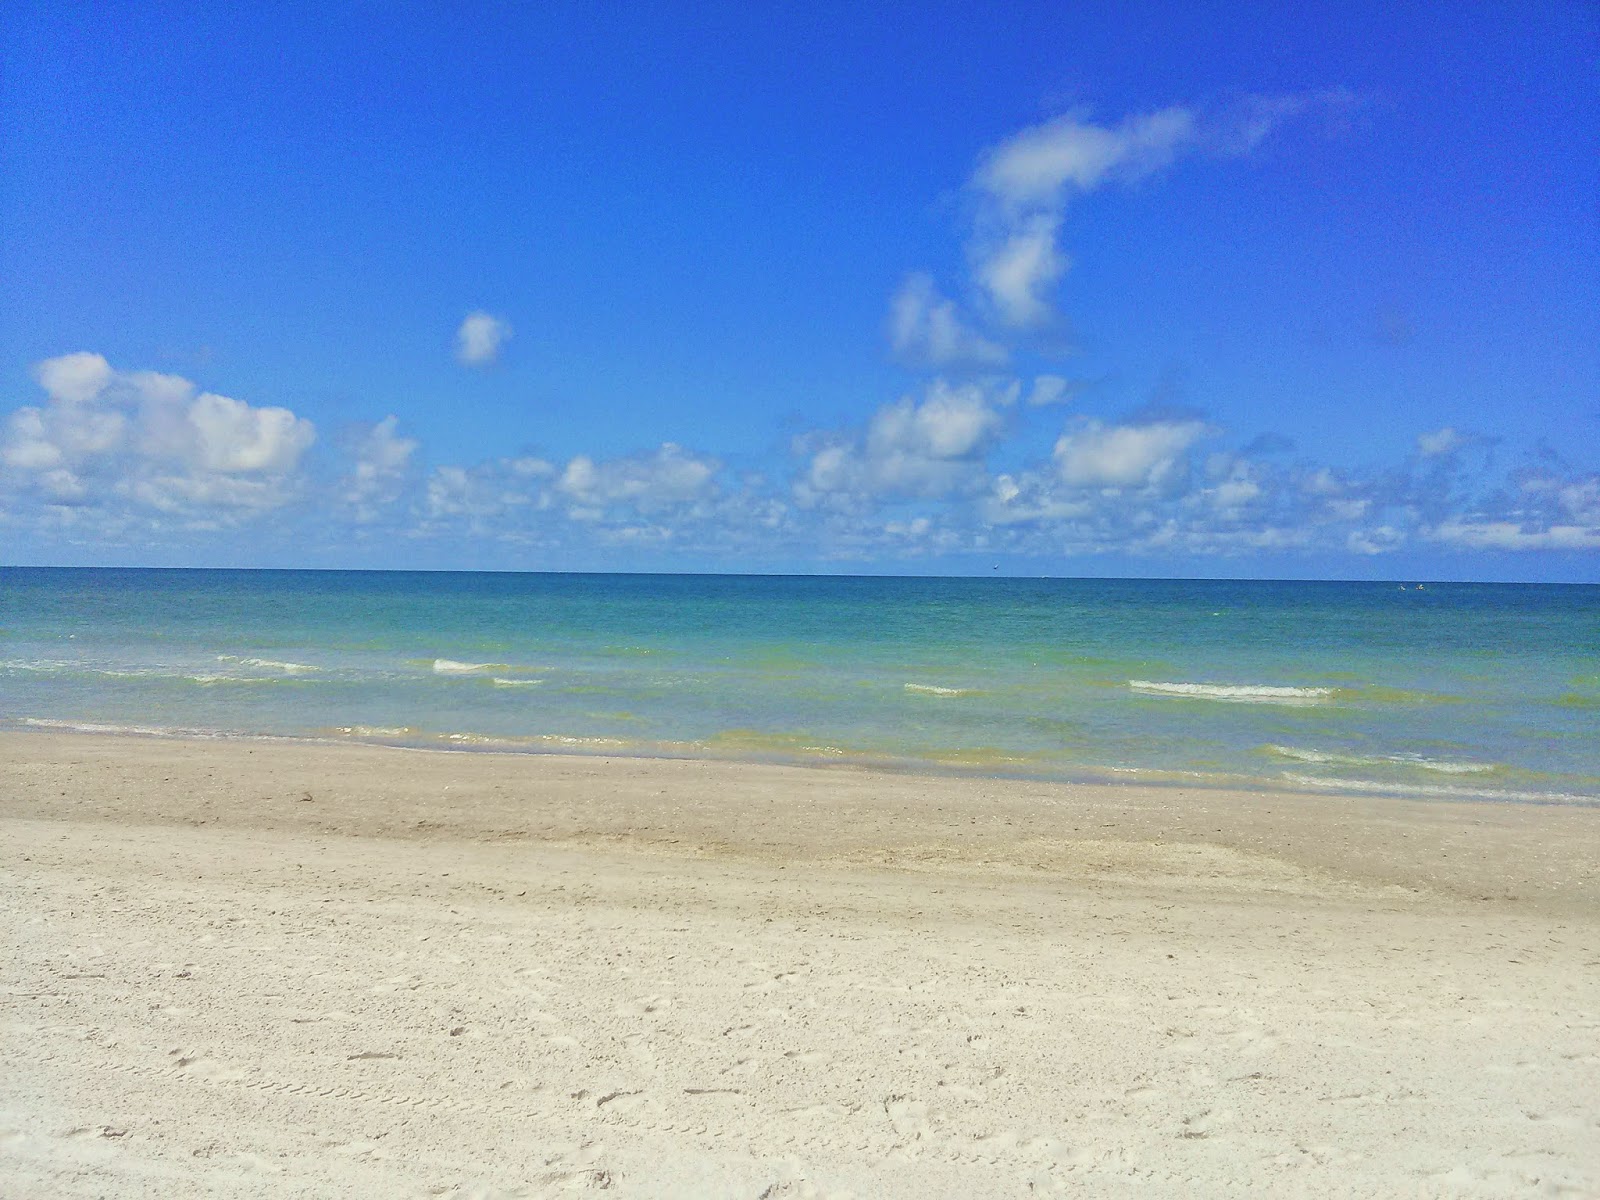 Maderia Beach, Florida April 2014